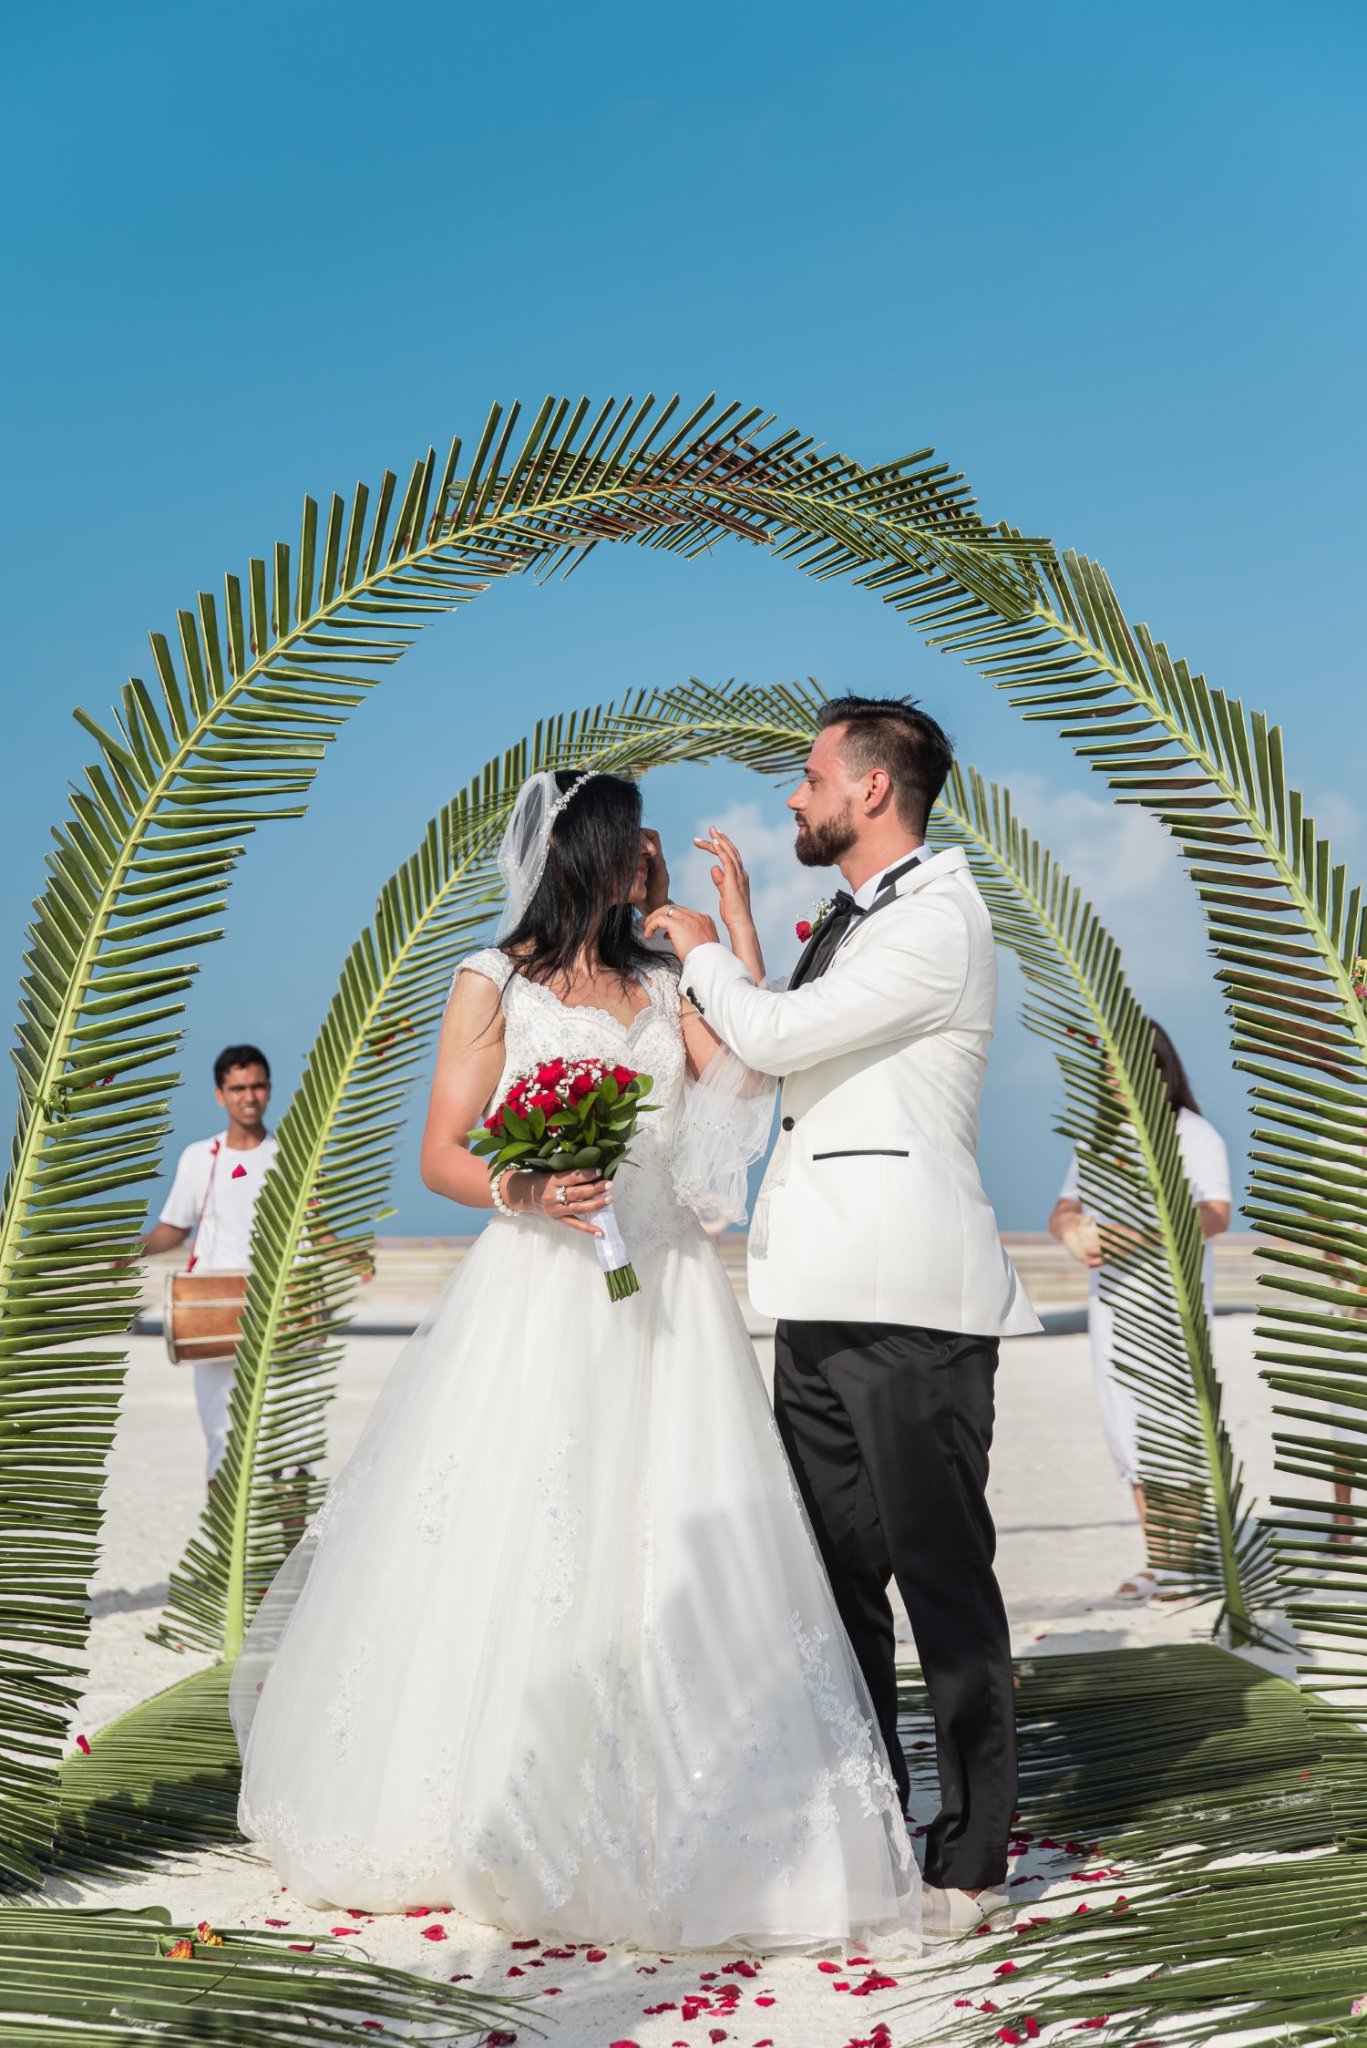 تصوير حفل زفاف - 21 نصيحة لمصوري الزفاف